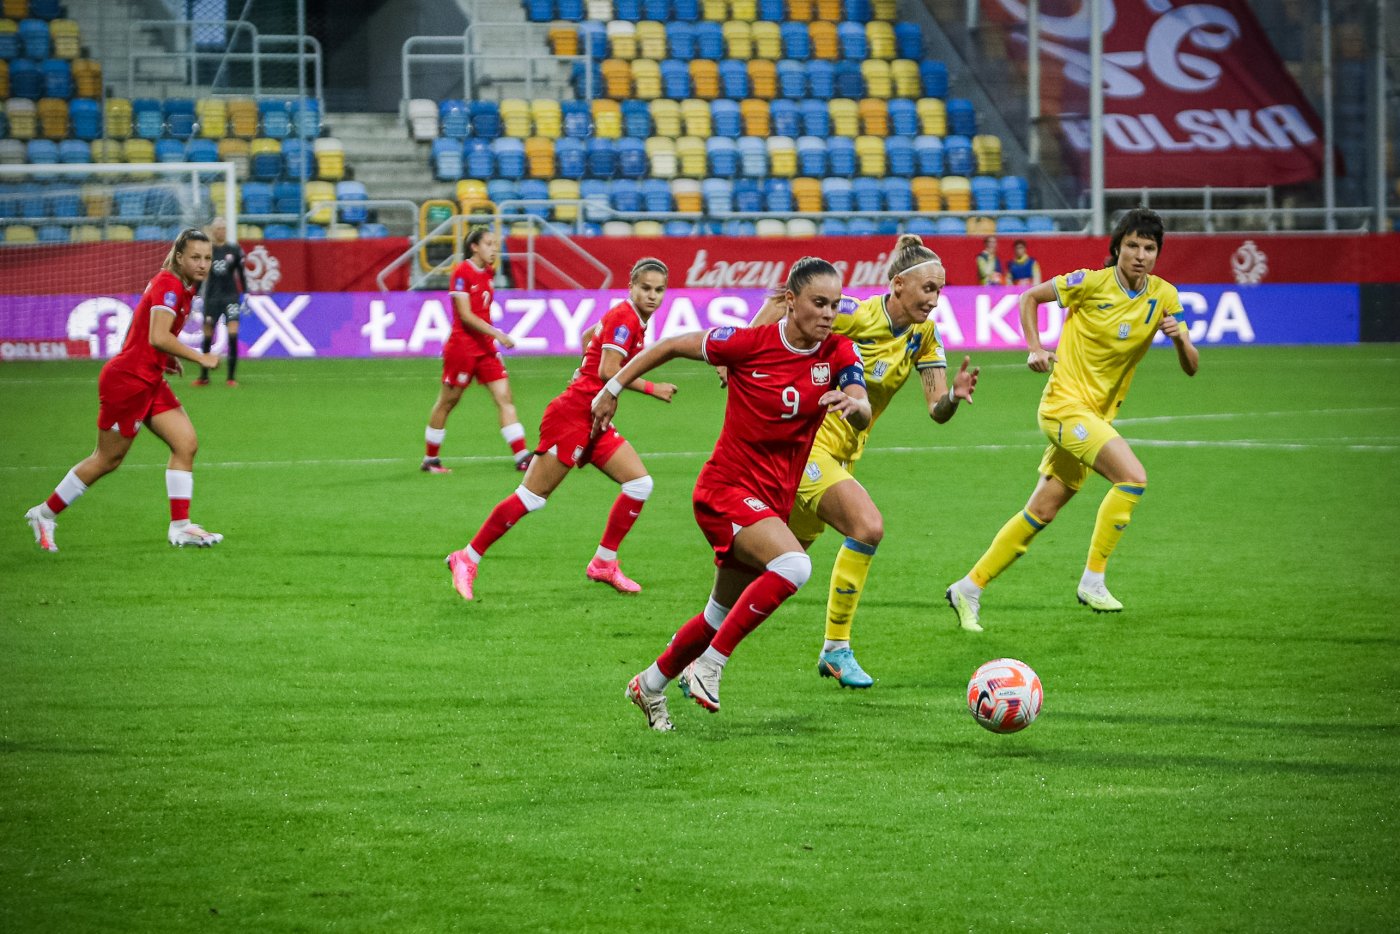 Mecz Polska Ukraina w kobiecej piłce nożnej (fot. Wojciech Szymański)